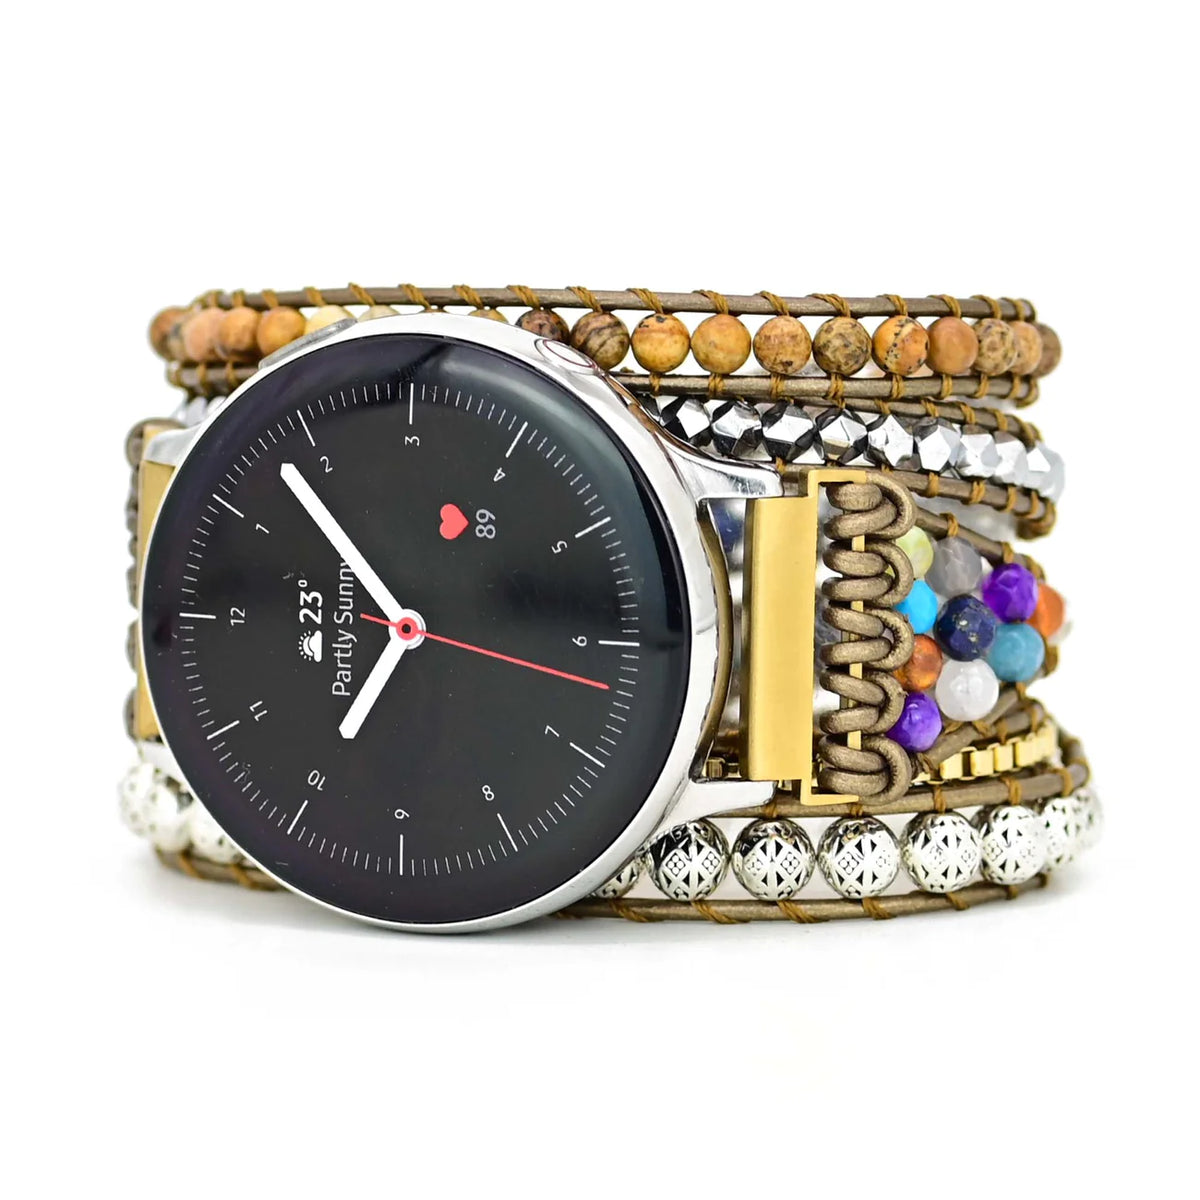 Earth Healing Energy Bracelet Watch For Samsung Galaxy or Garmin